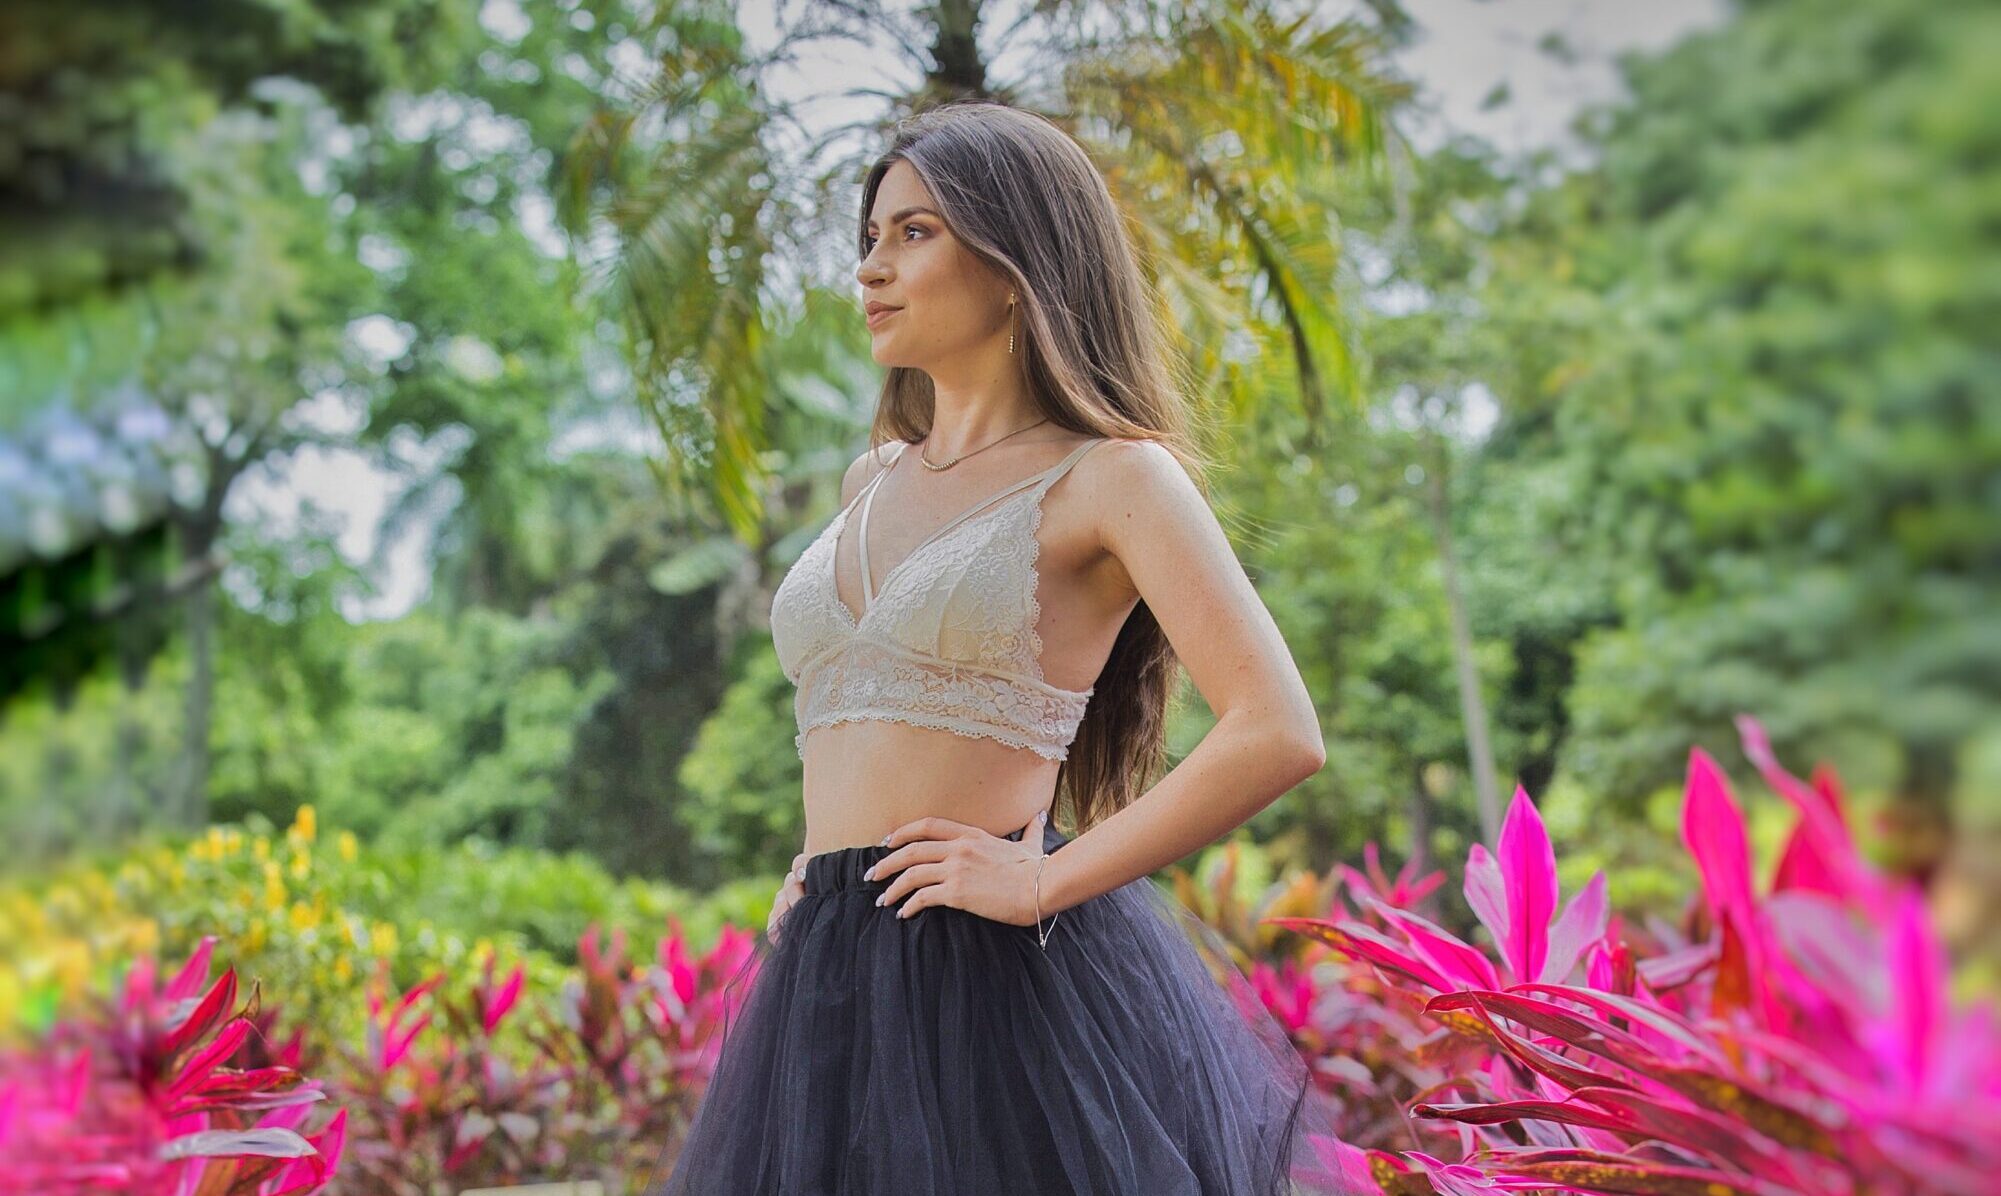 Syara Méndez Promociona su nuevo EP ‘Voy Hacia a Ti’